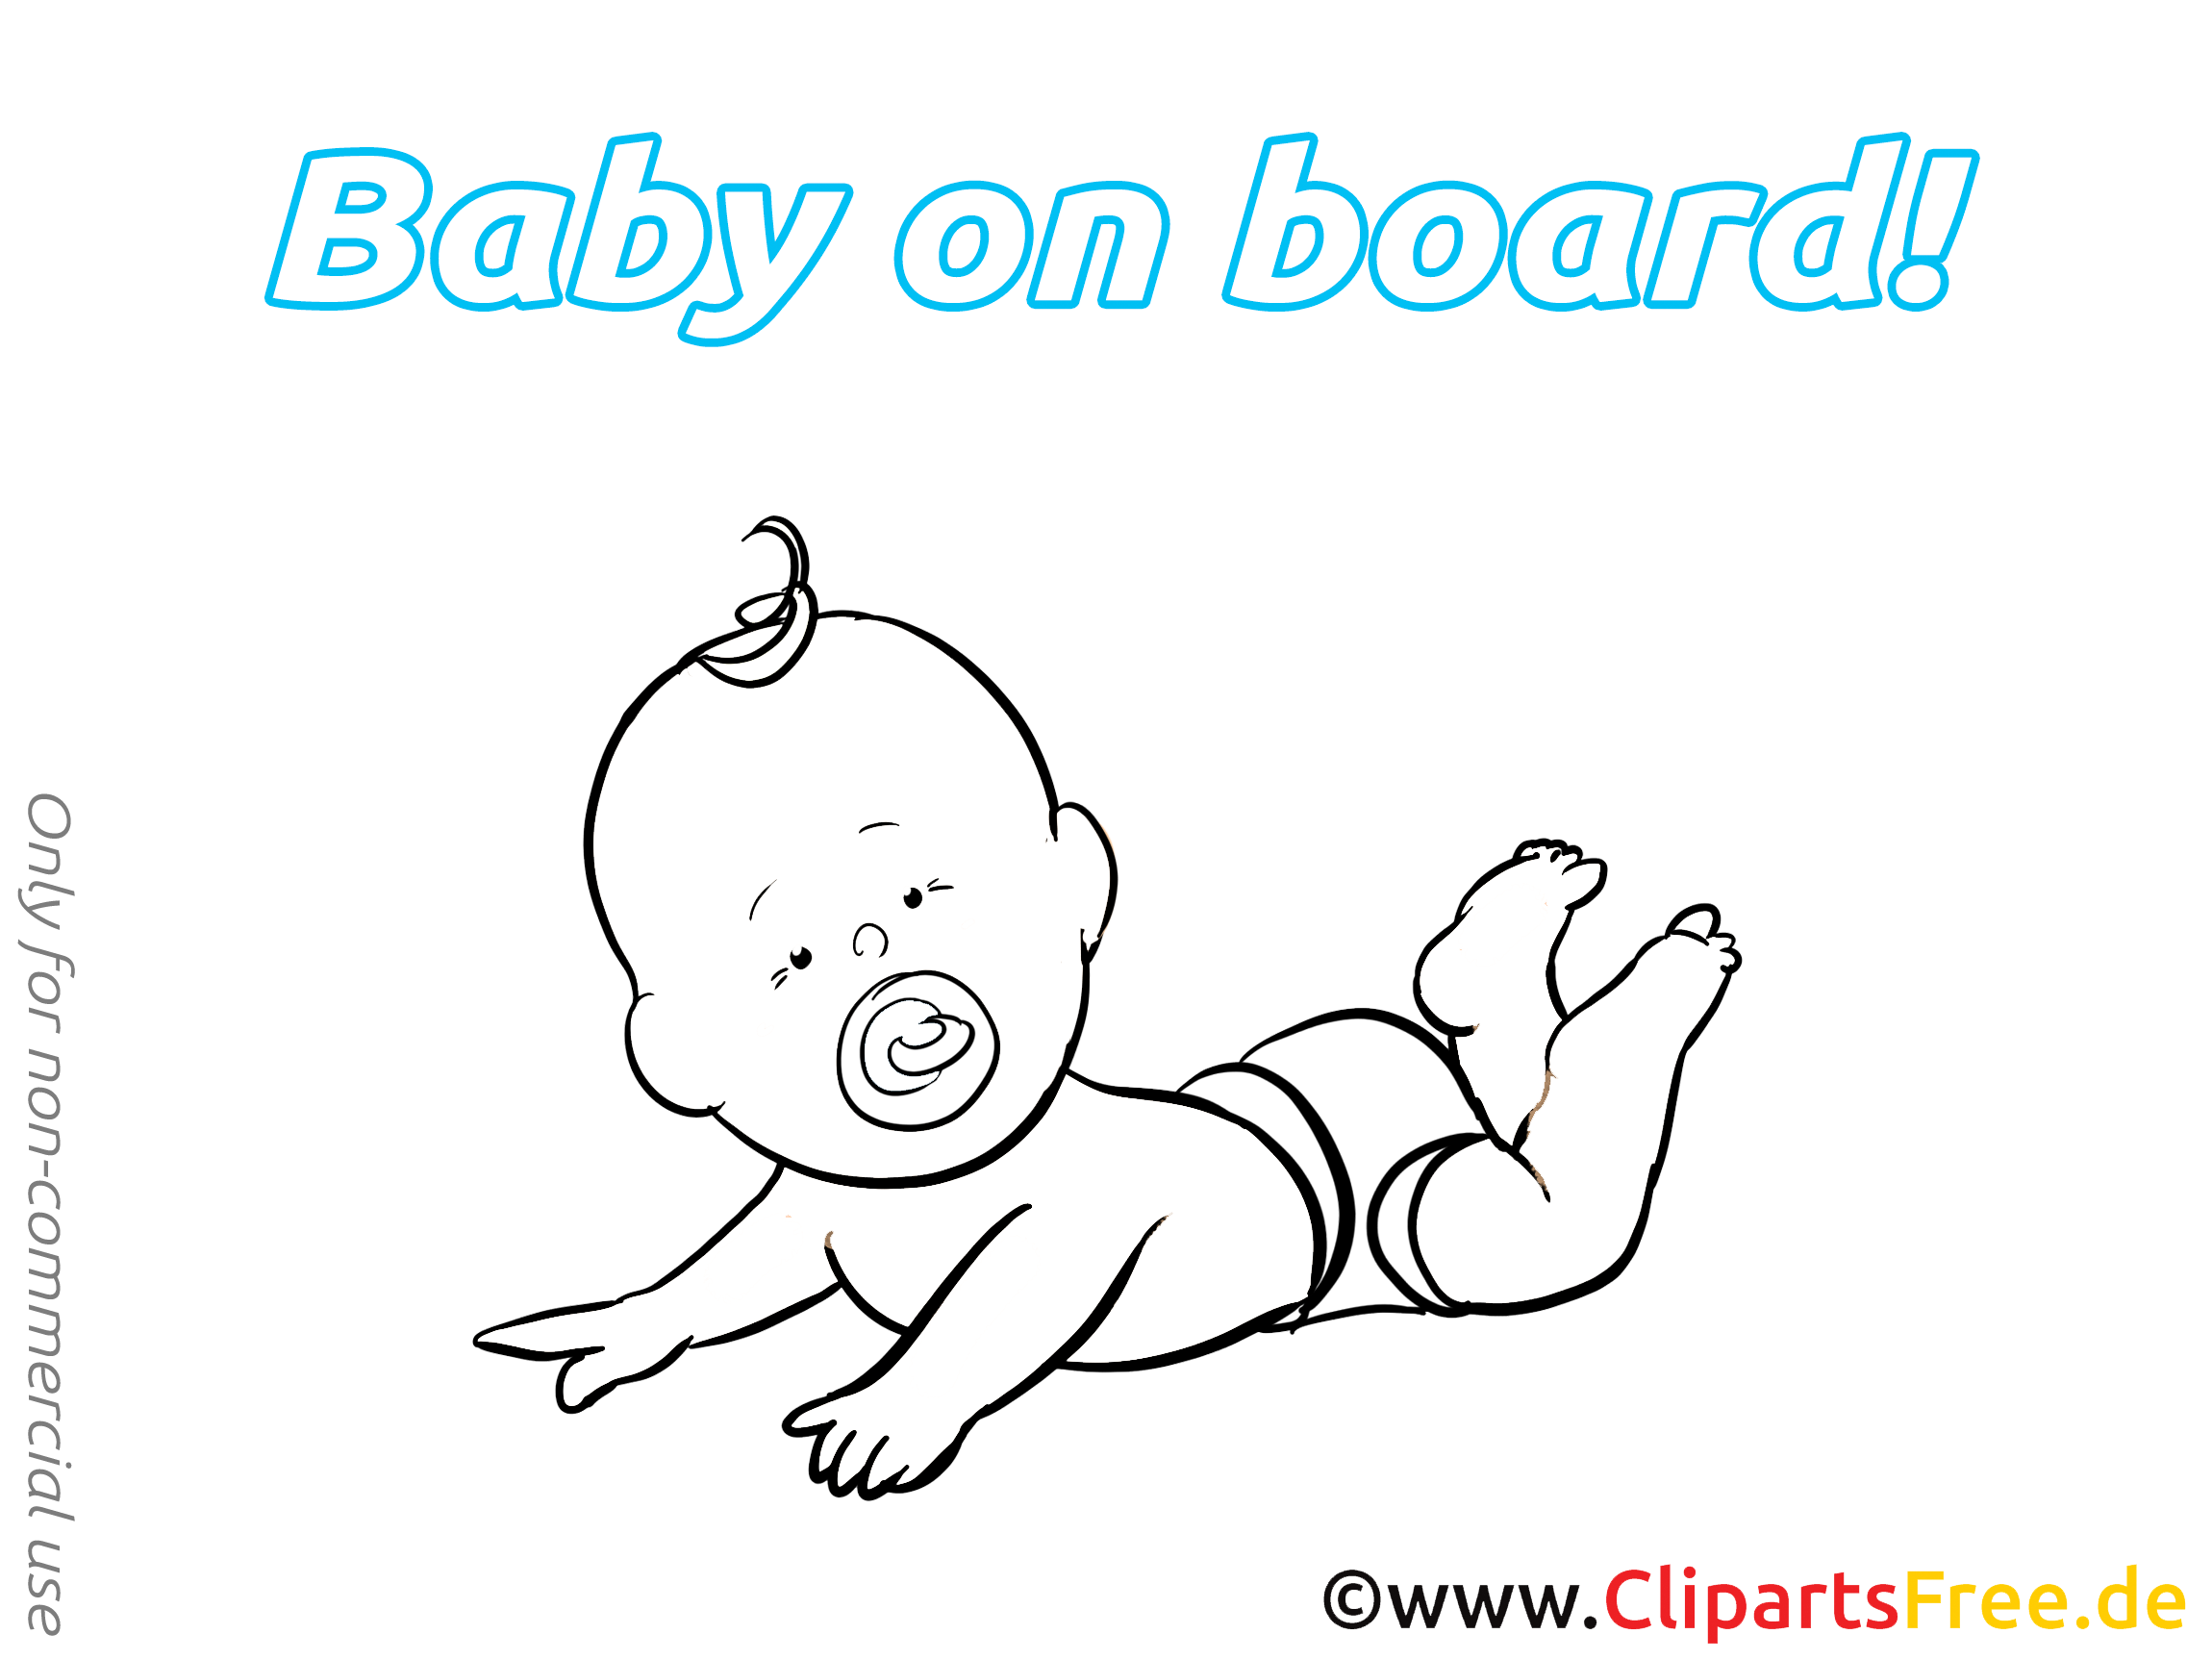 Clipart gratuit bébé à bord images